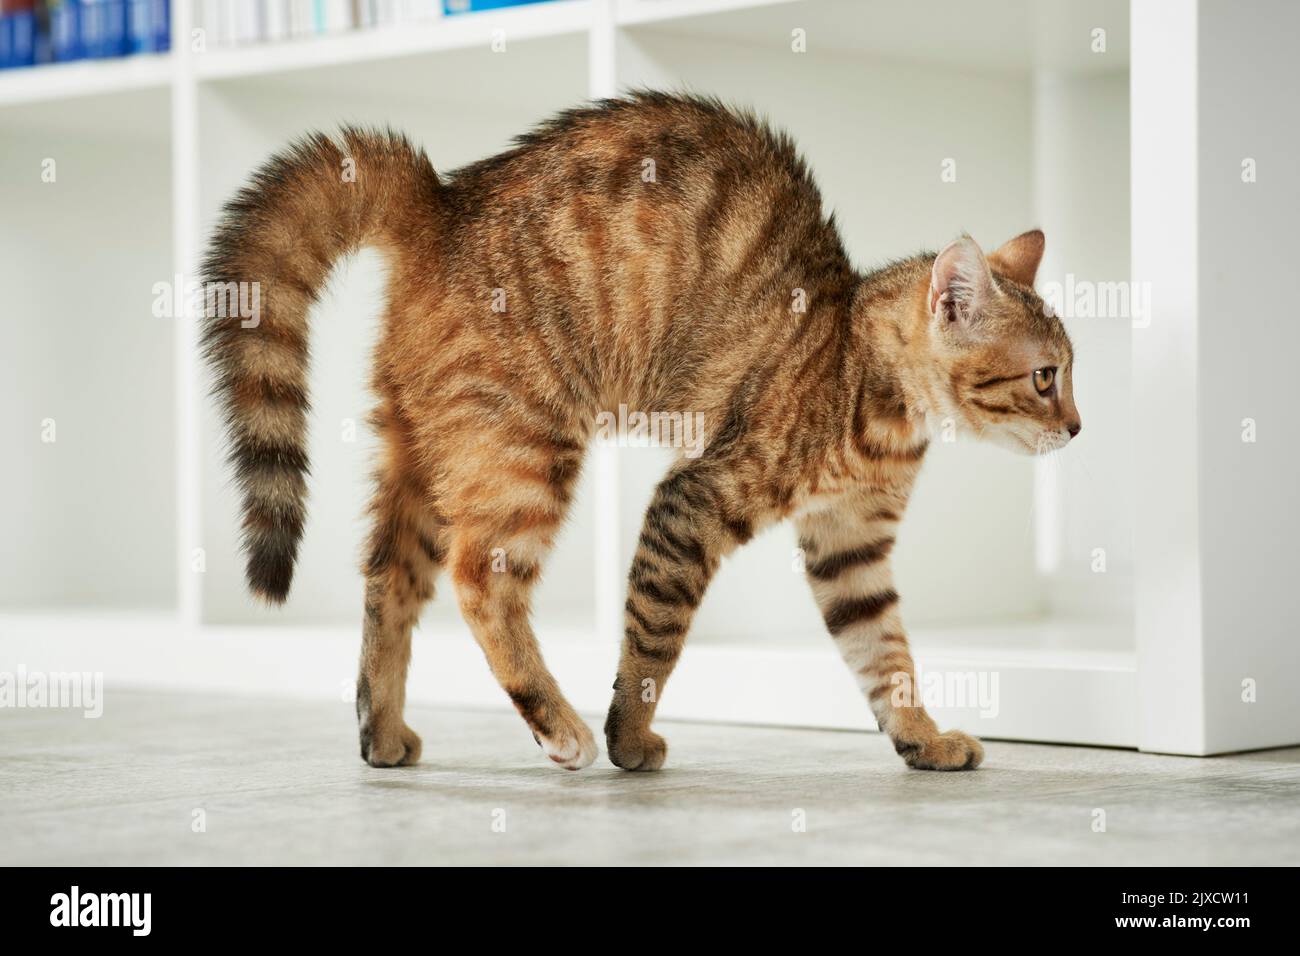 Gato doméstico. Un gatito tabby arquea su espalda. Alemania Foto de stock